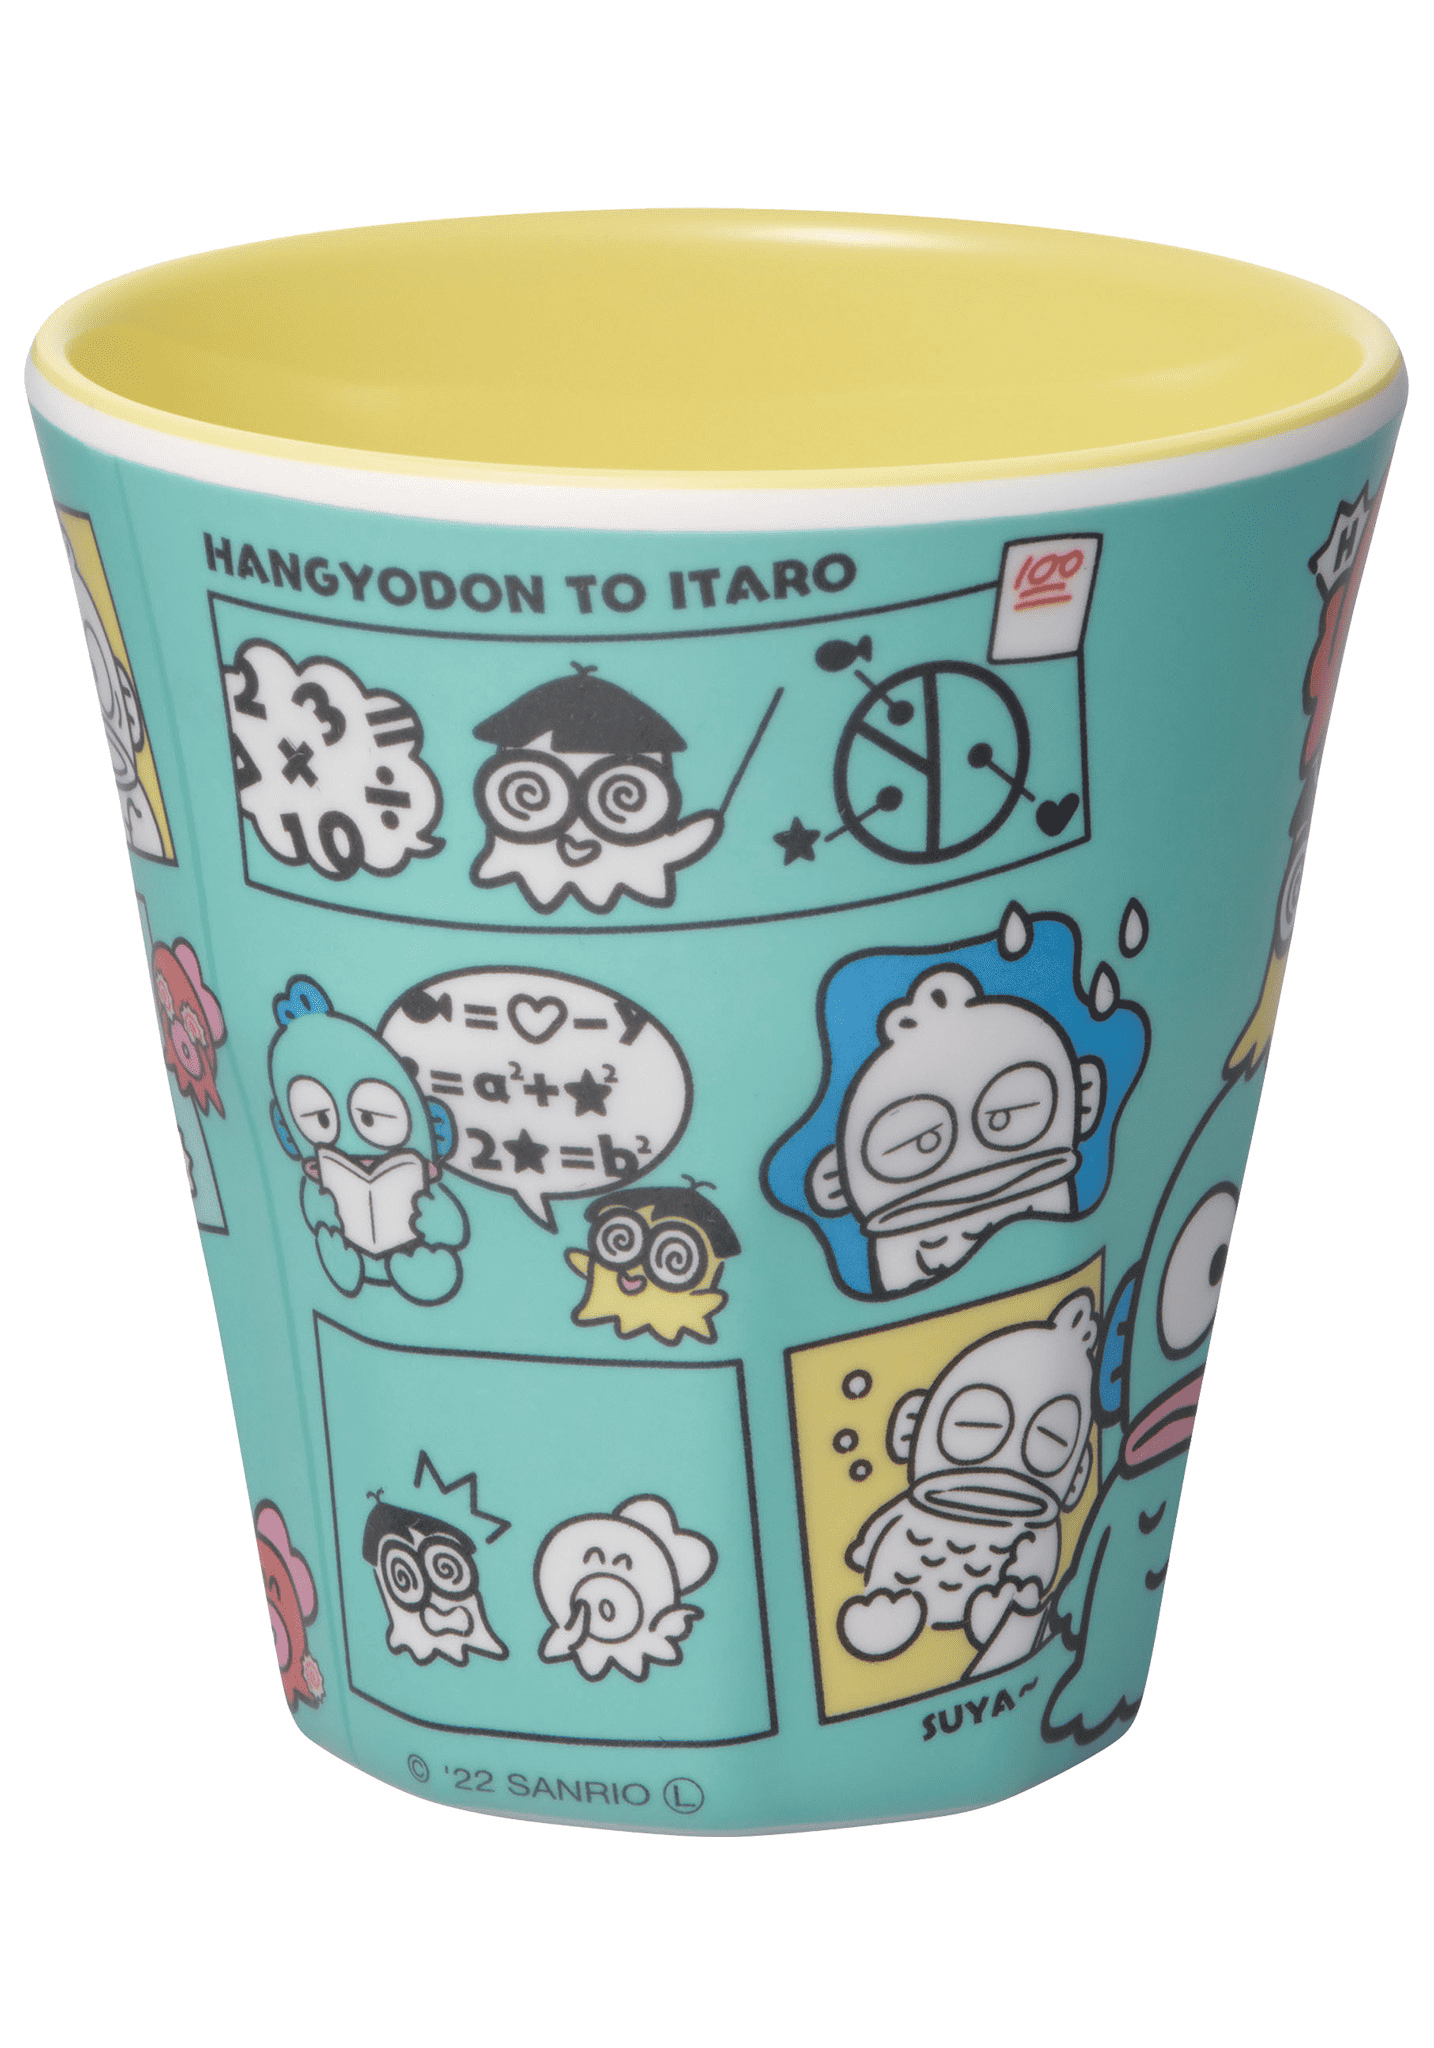 Hangyodon Comic Melamine Cup Sanrio